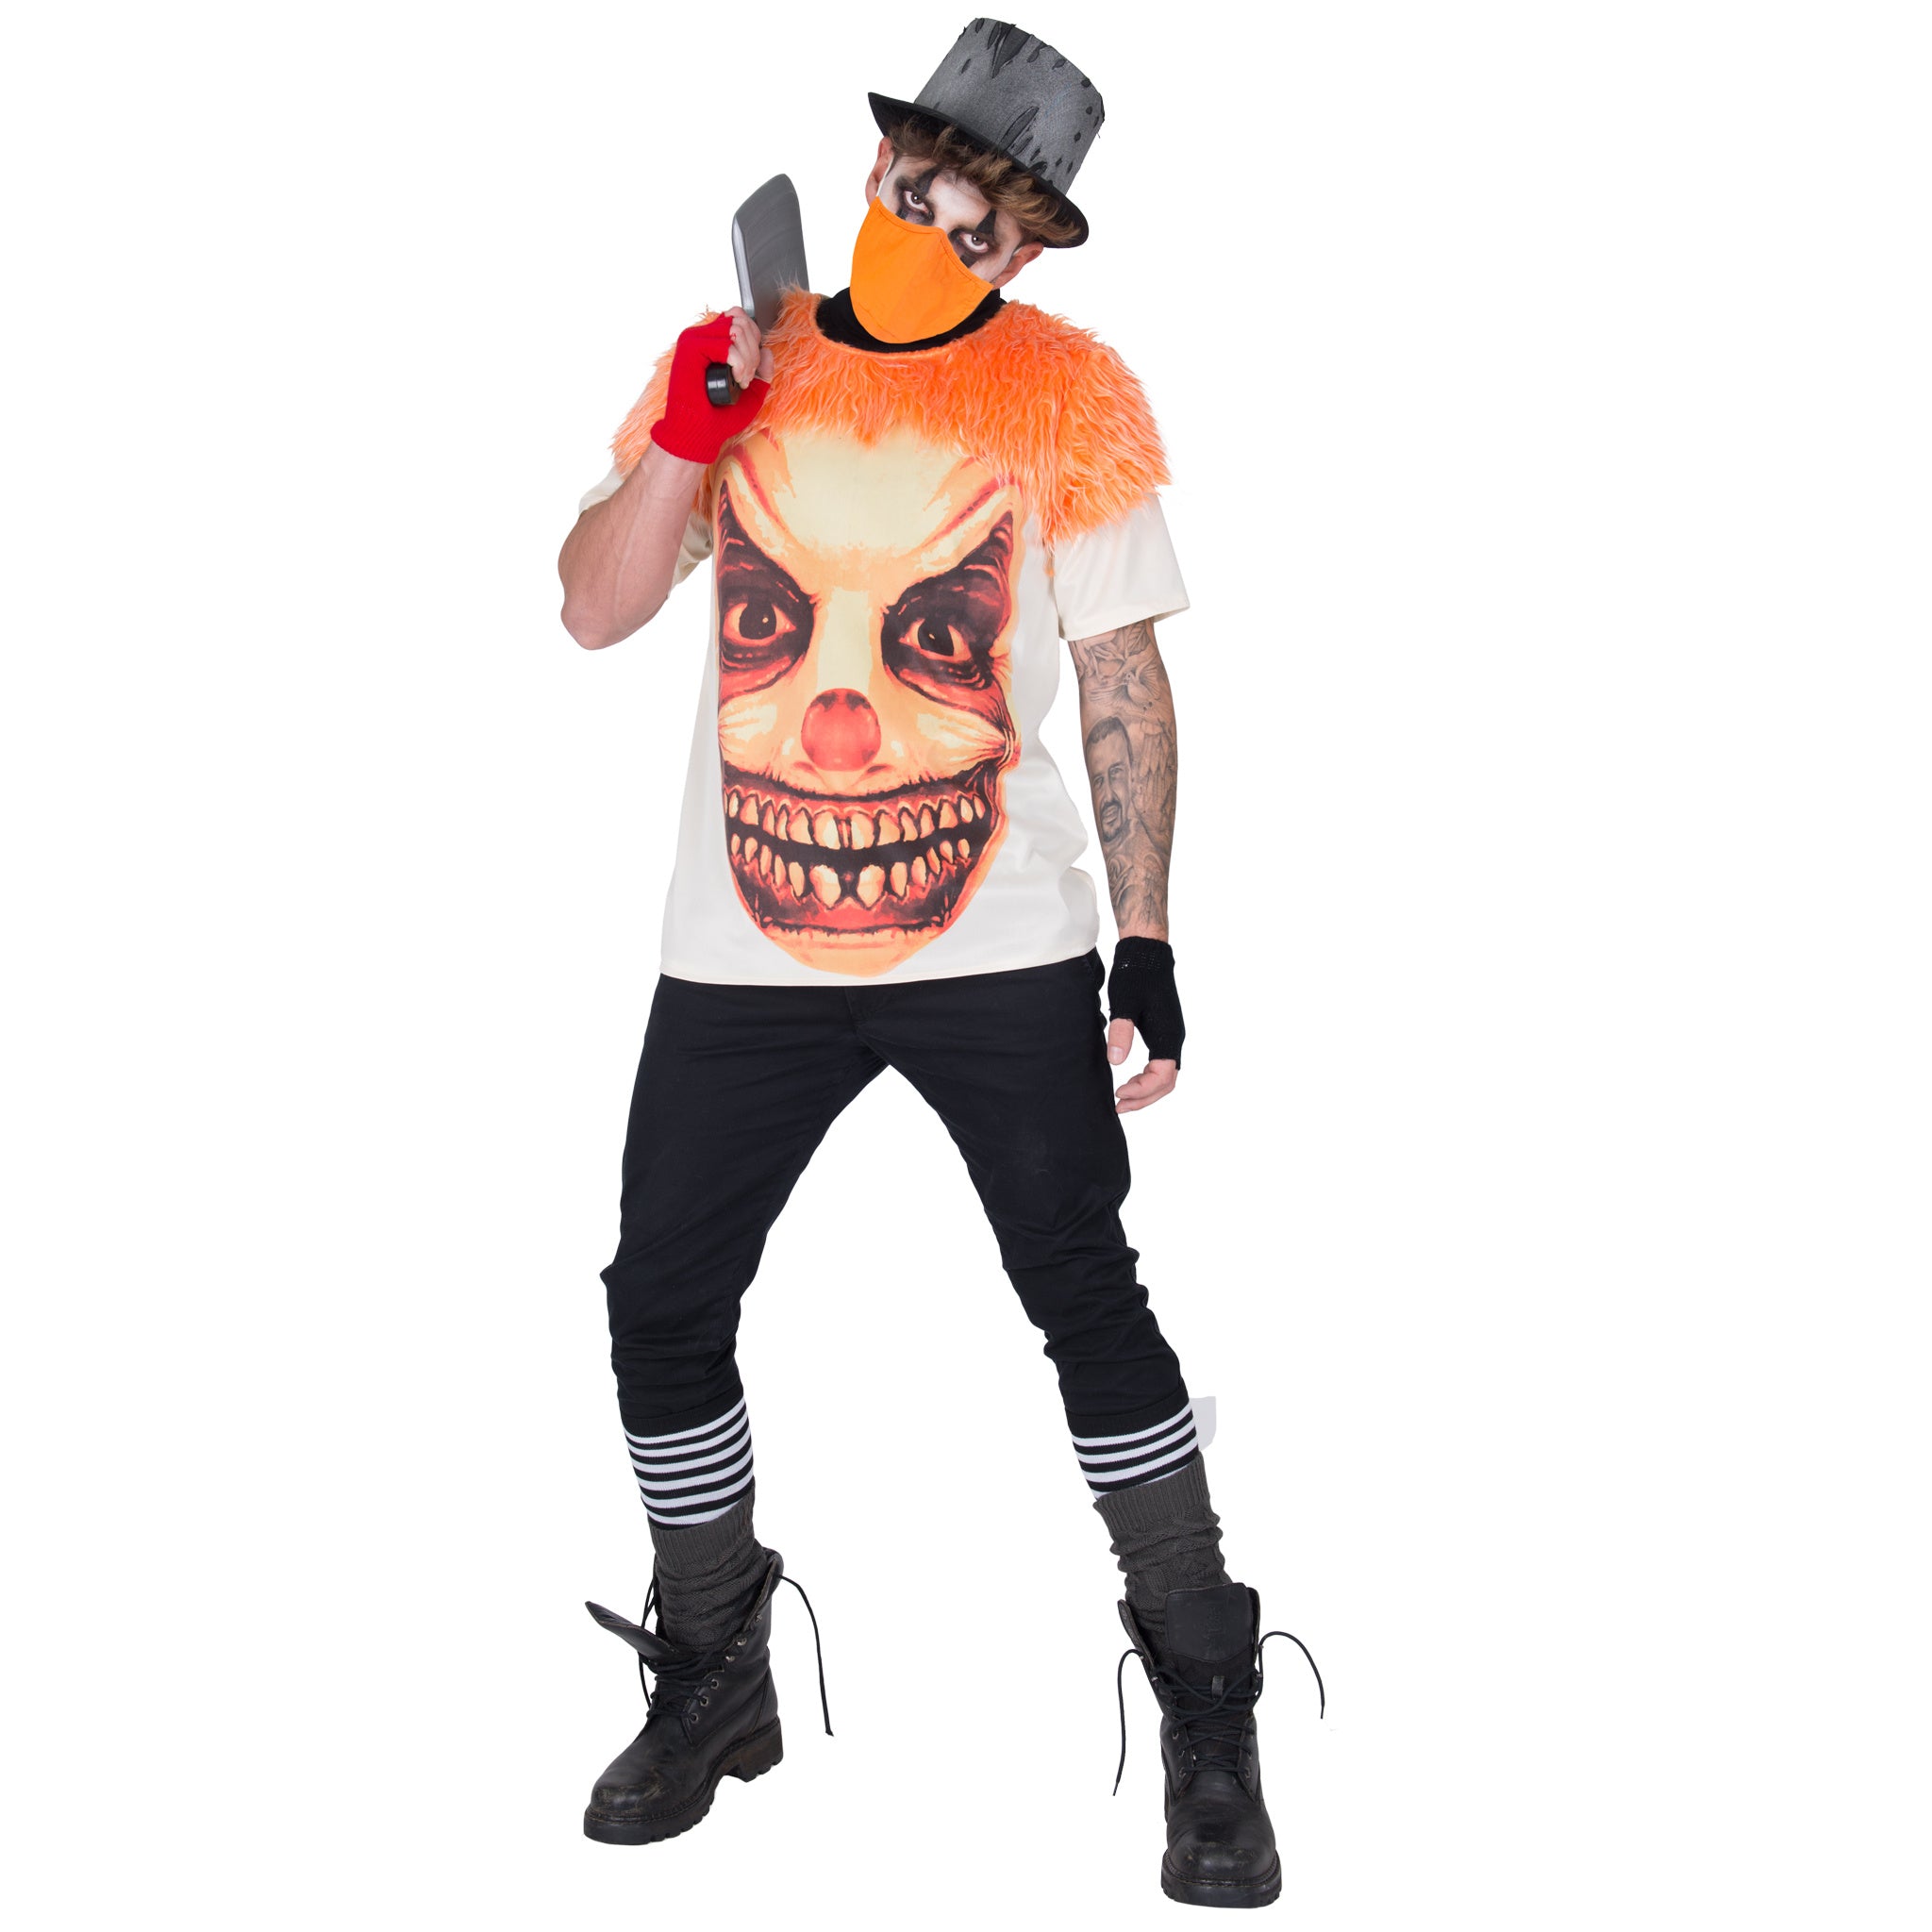 Funny Fashion - Monster & Griezel Kostuum - Bezeten Door Een Enge Clown - oranje,wit / beige - One Size - Halloween - Verkleedkleding